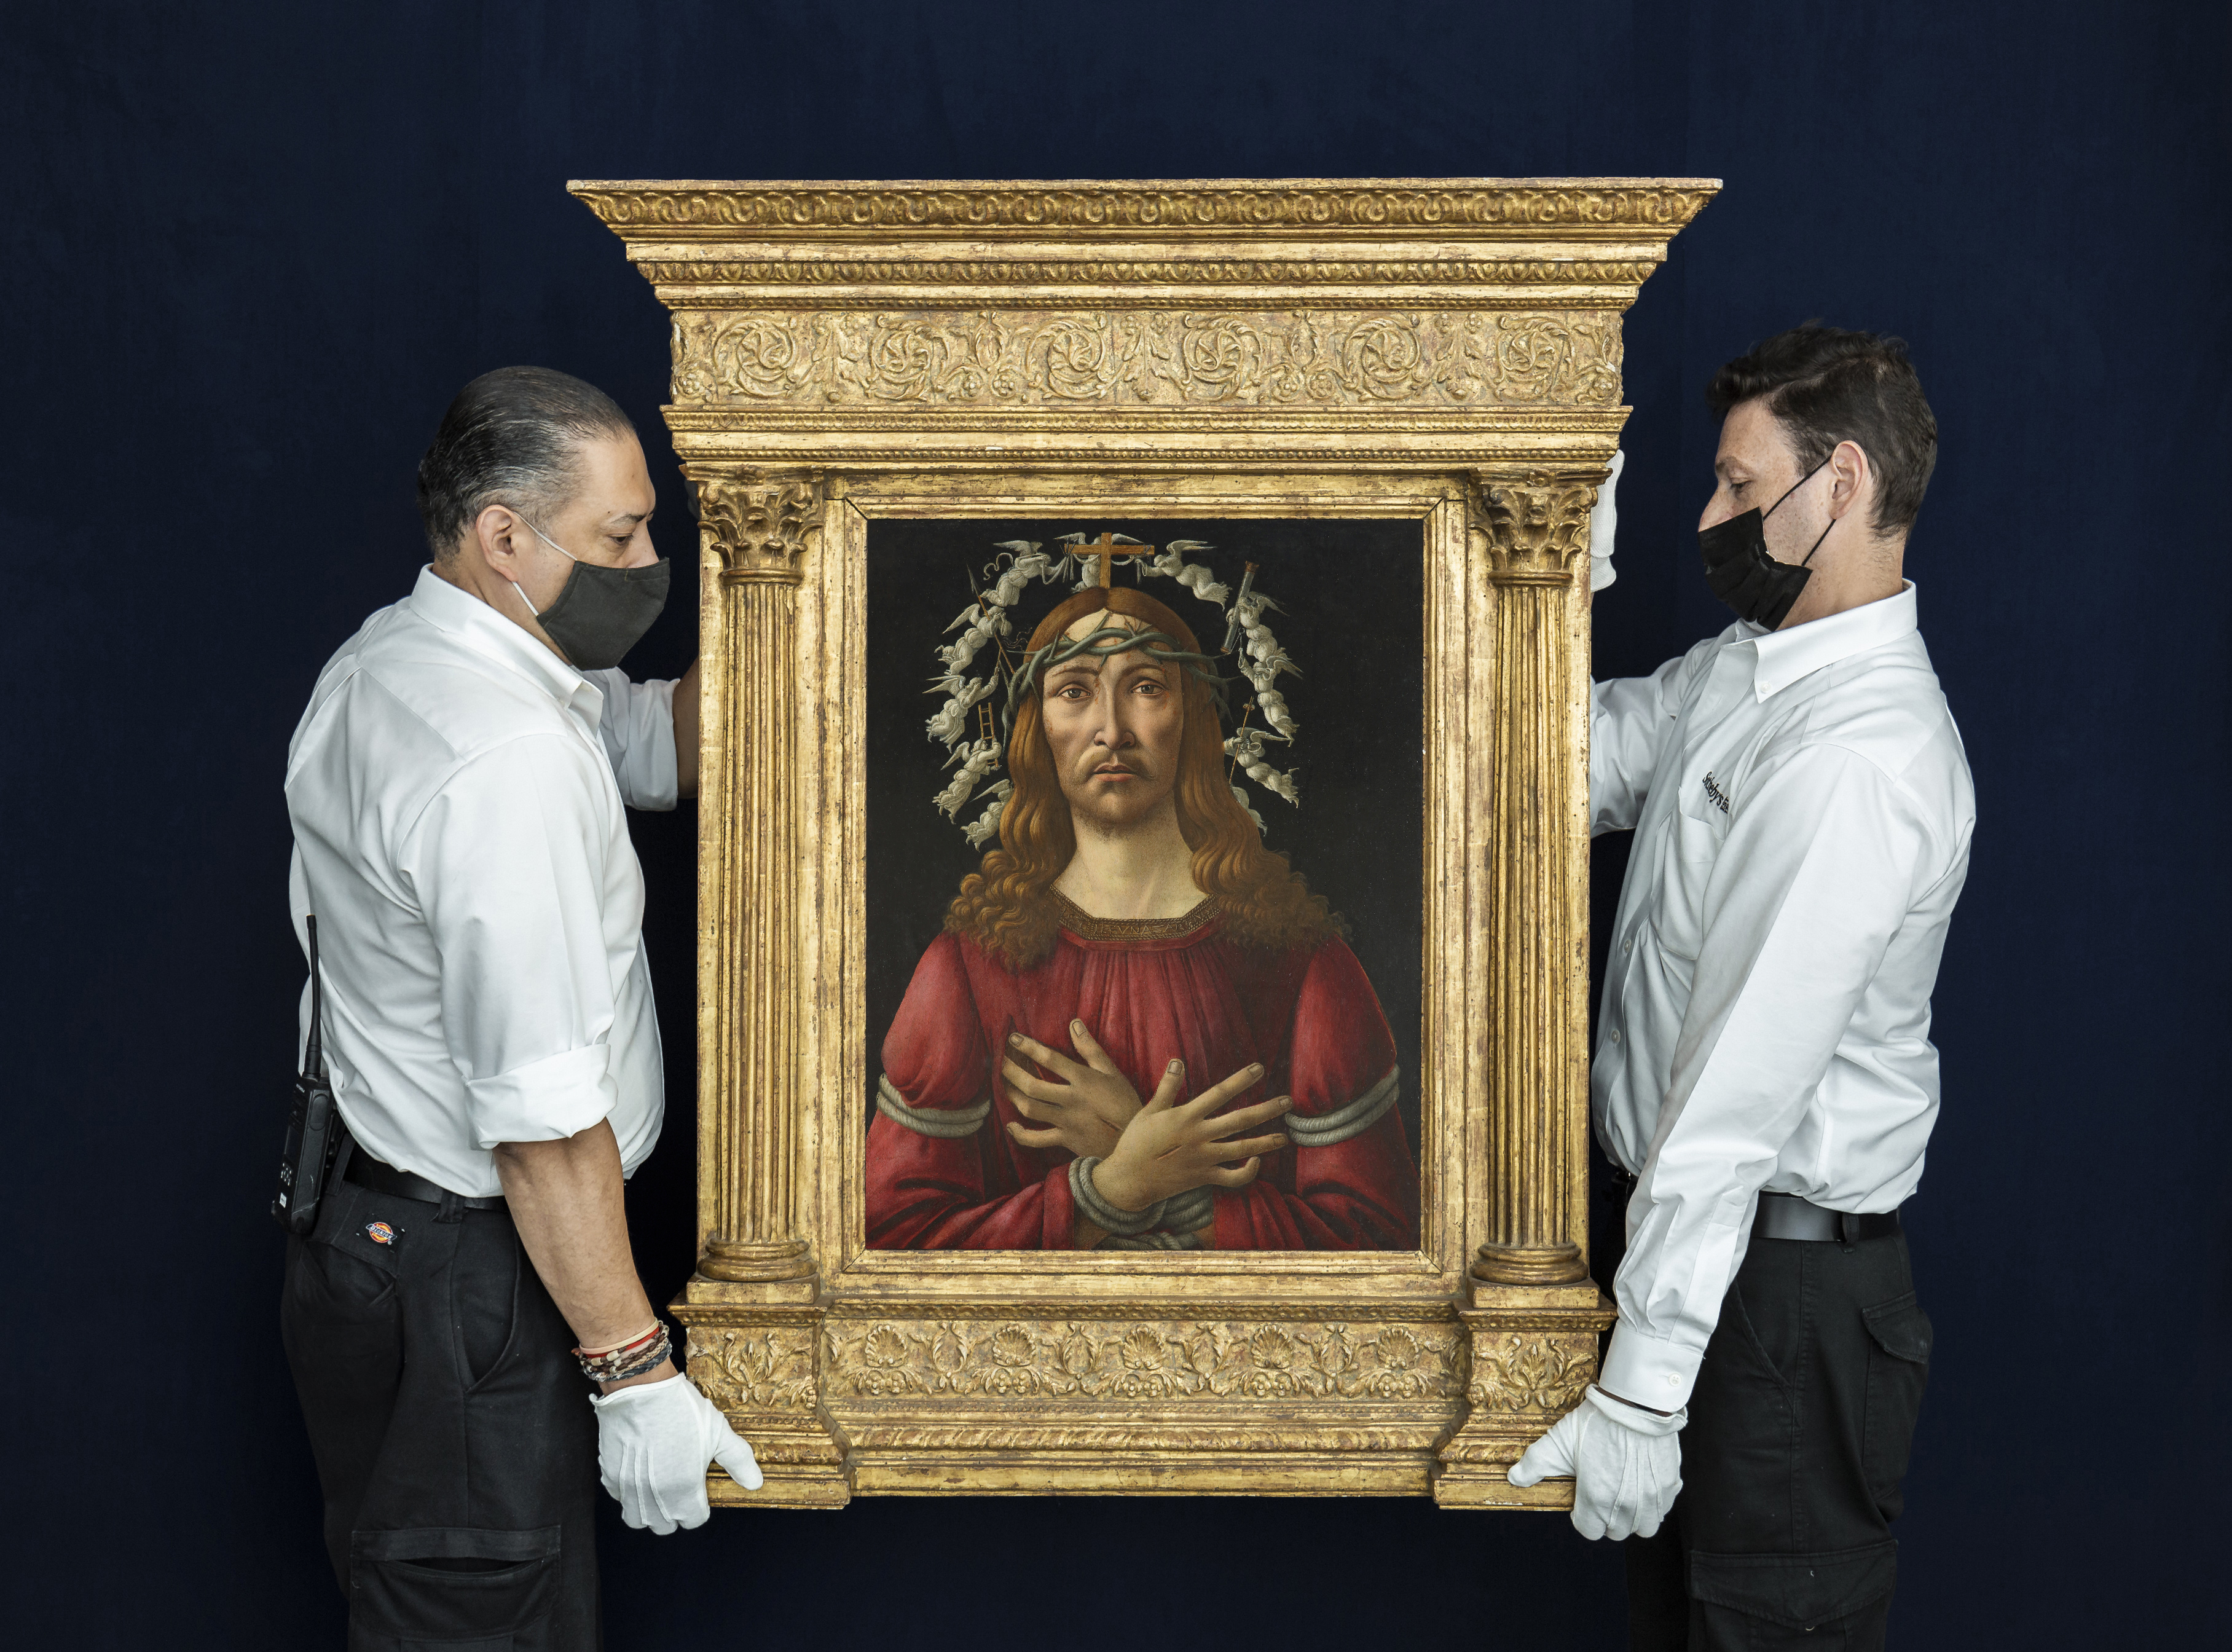 文藝復興巨匠Sandro Botticelli 畫作《憂患之子》首次在港公開展出